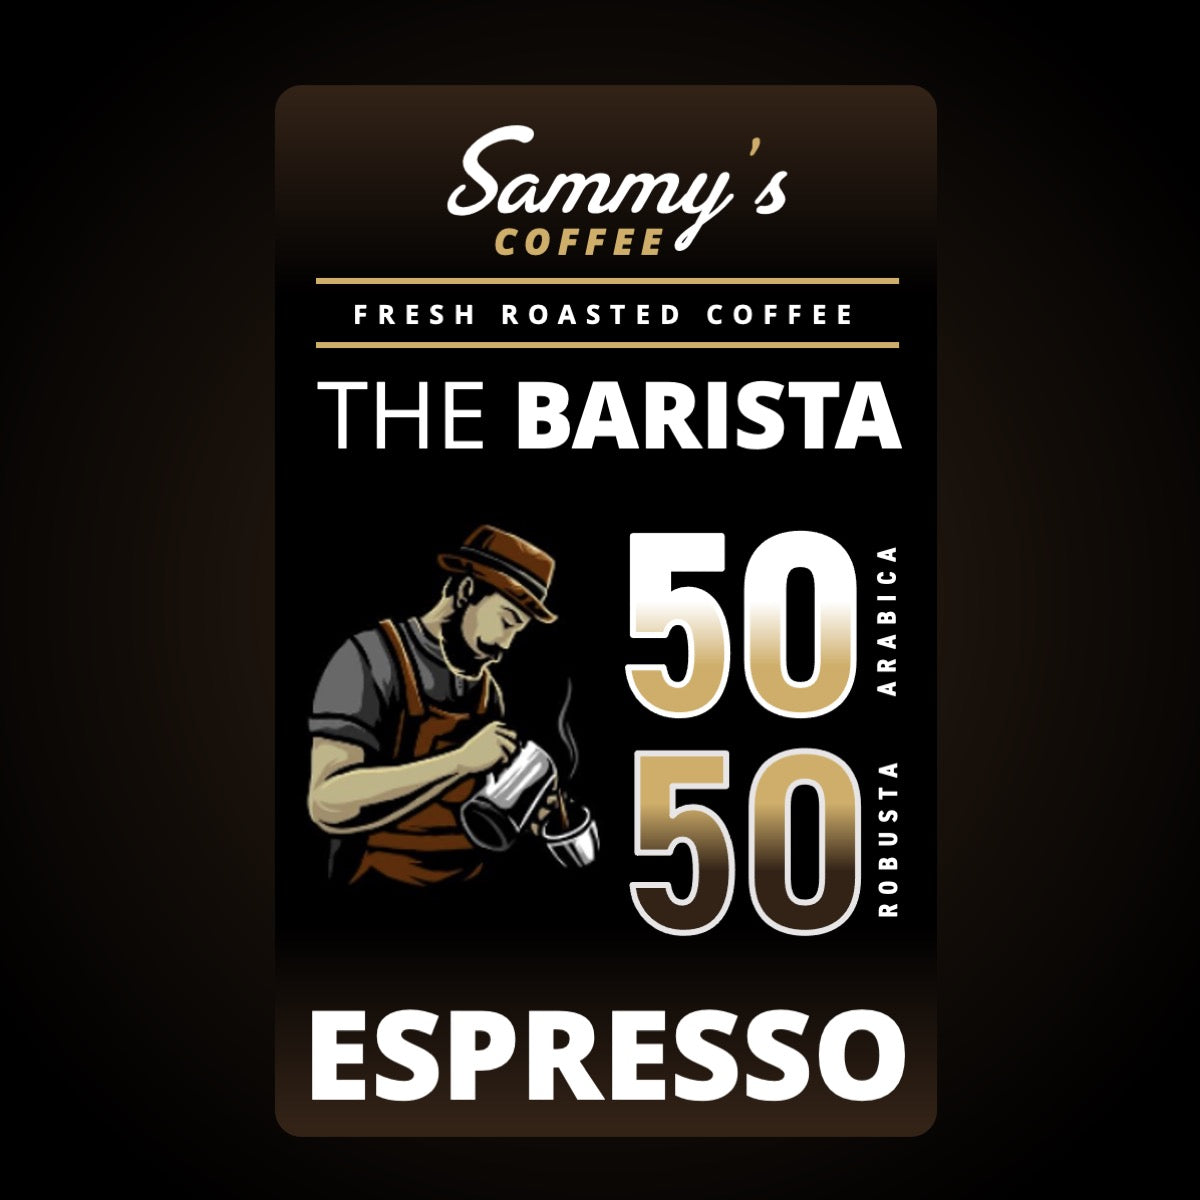 The BARISTA 50-50 Espresso